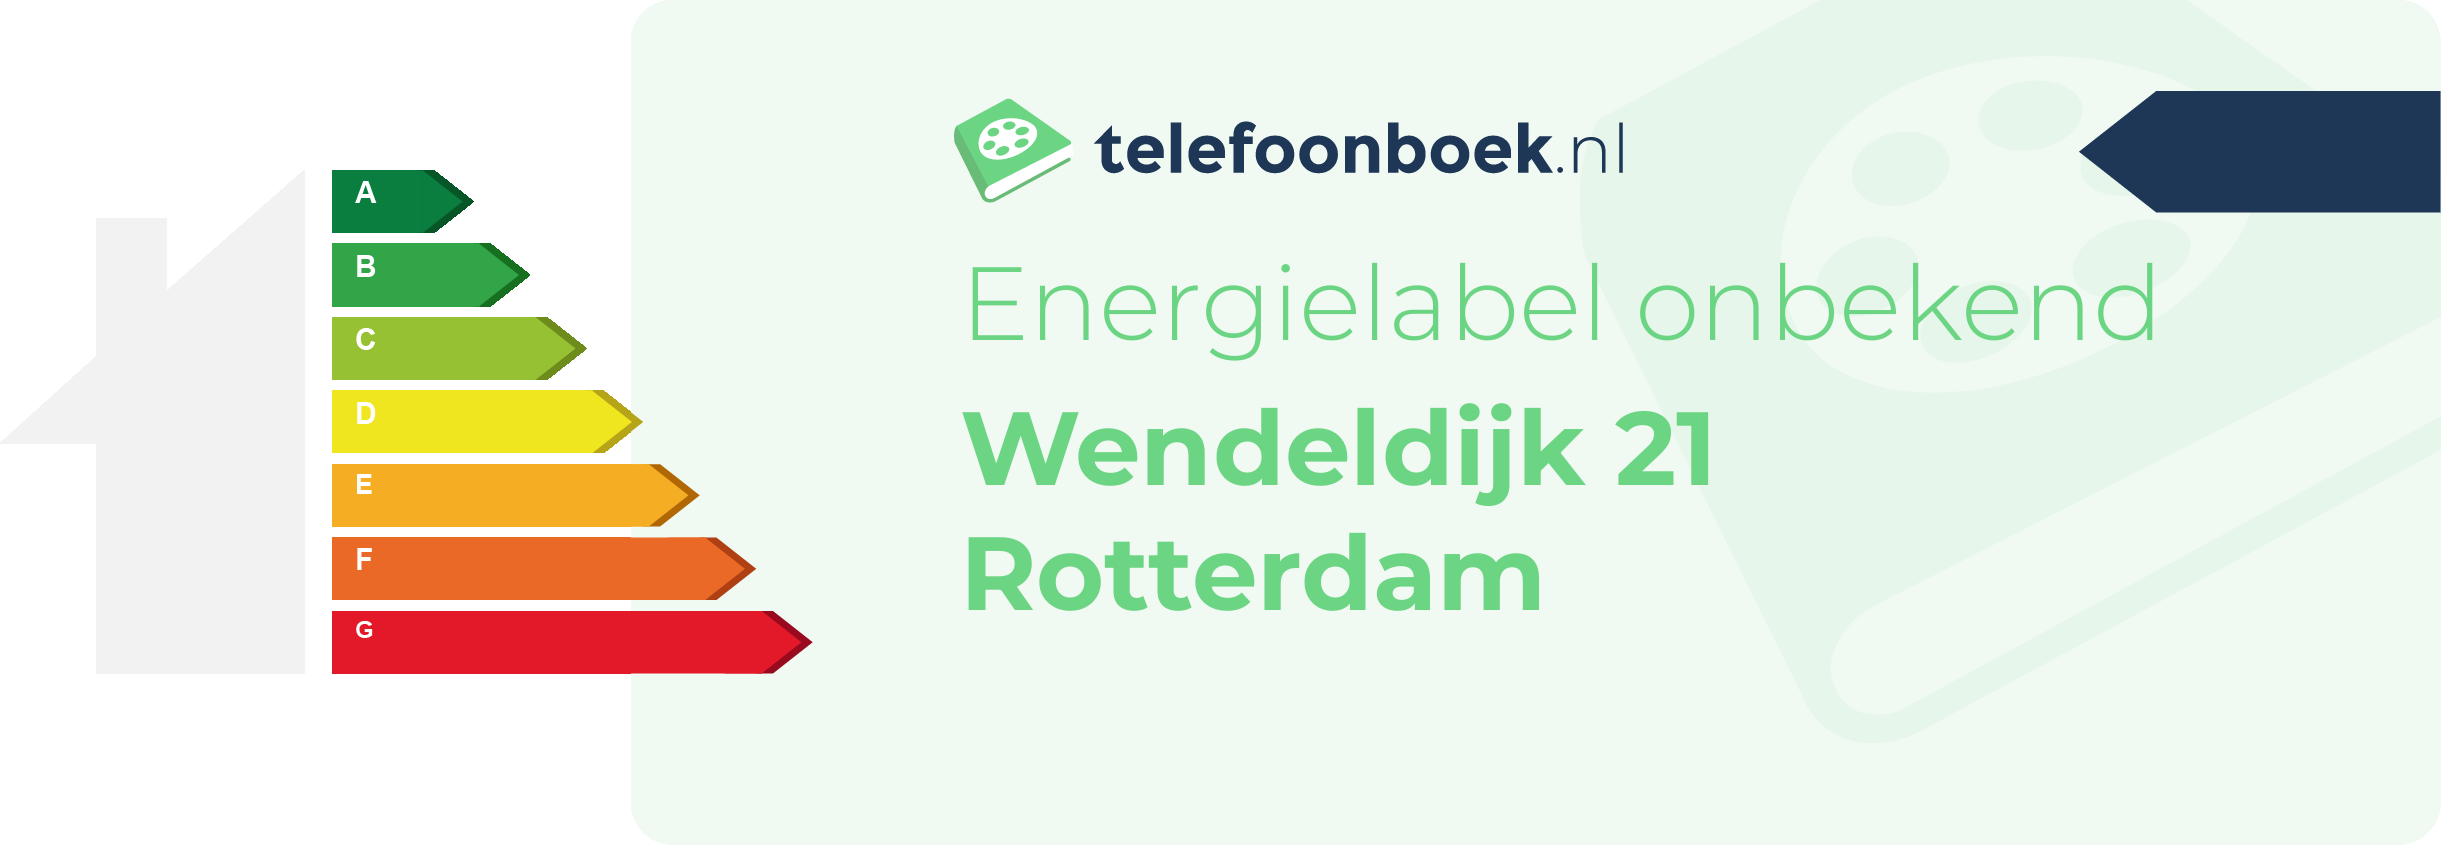 Energielabel Wendeldijk 21 Rotterdam